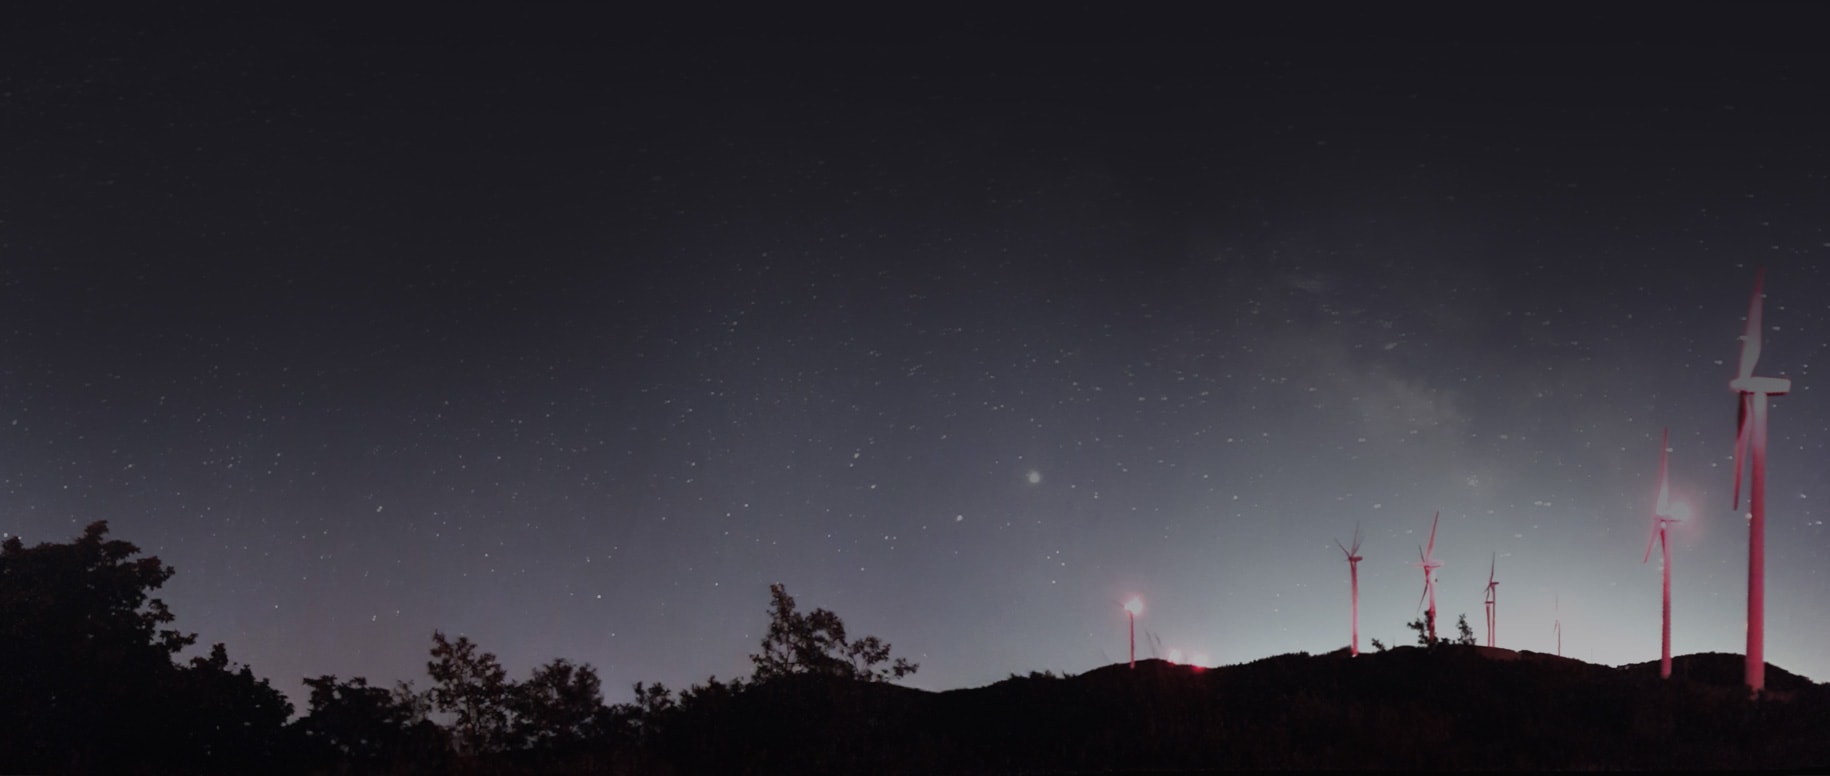 Ein kleiner Hügel ist mit rot beleuchteten Windturbinen im Vordergrund übersät, im Hintergrund ein weitläufiger Sternenhimmel.